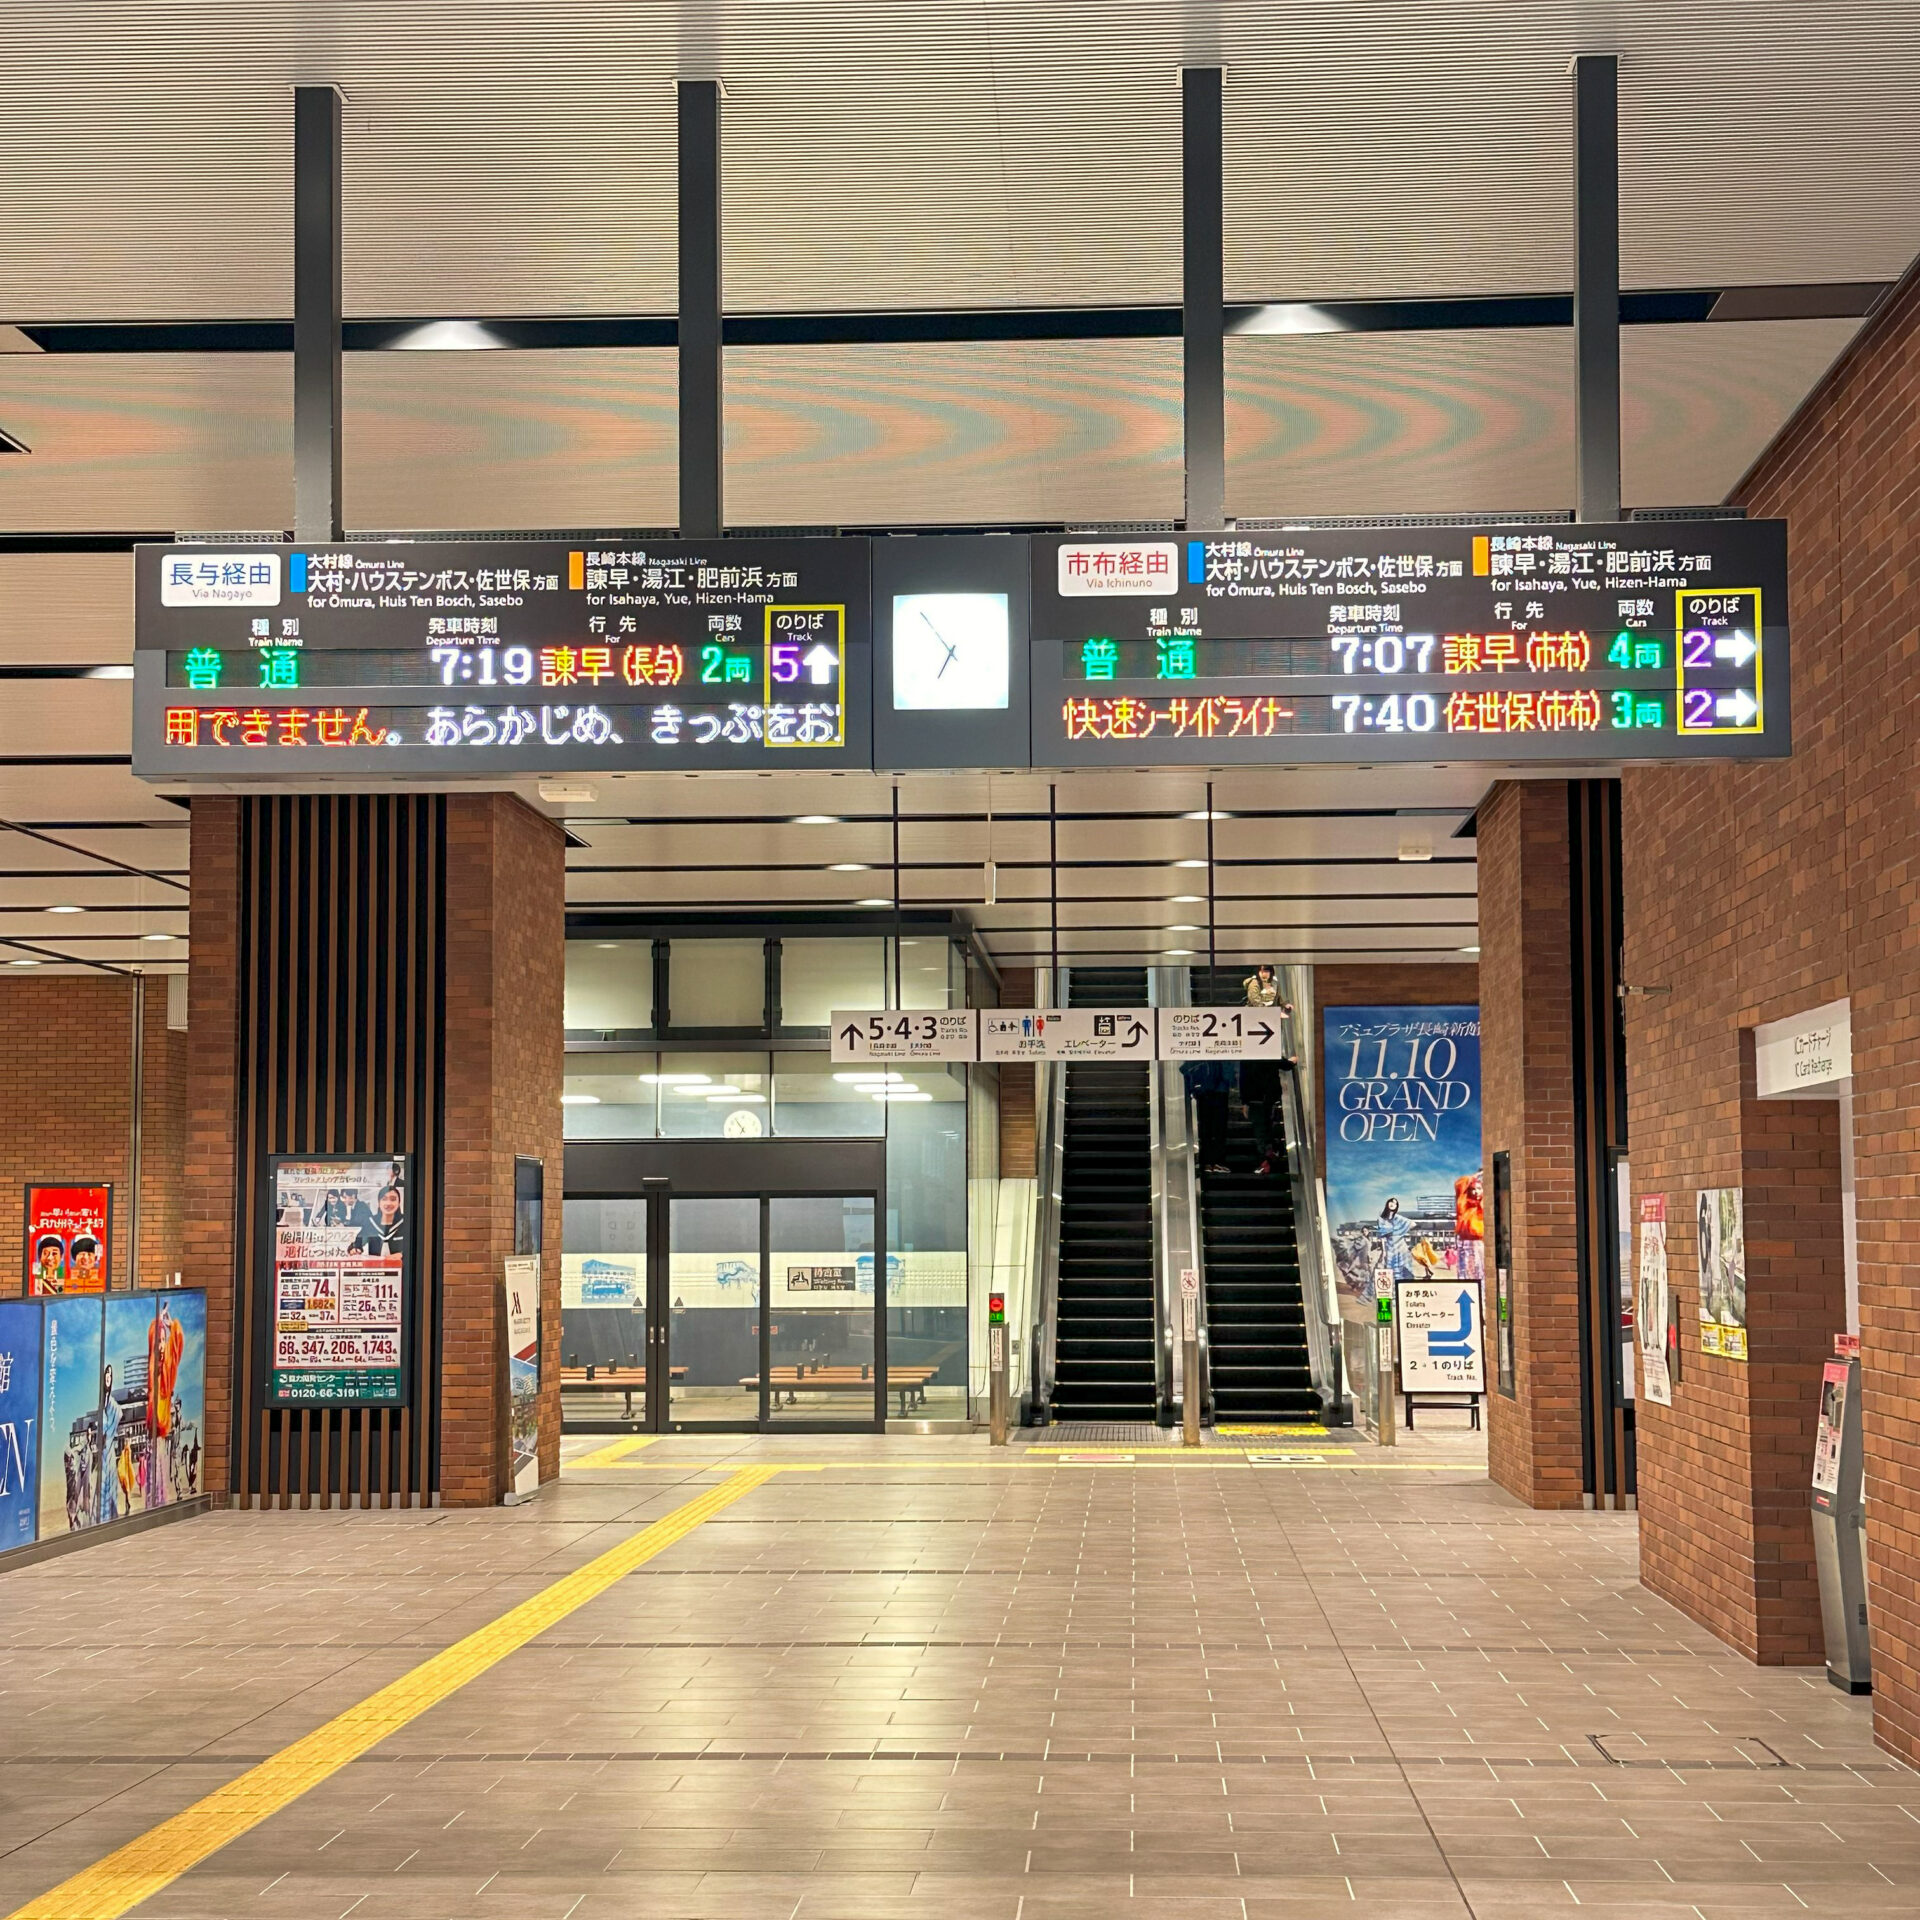 長崎駅在来線コンコース